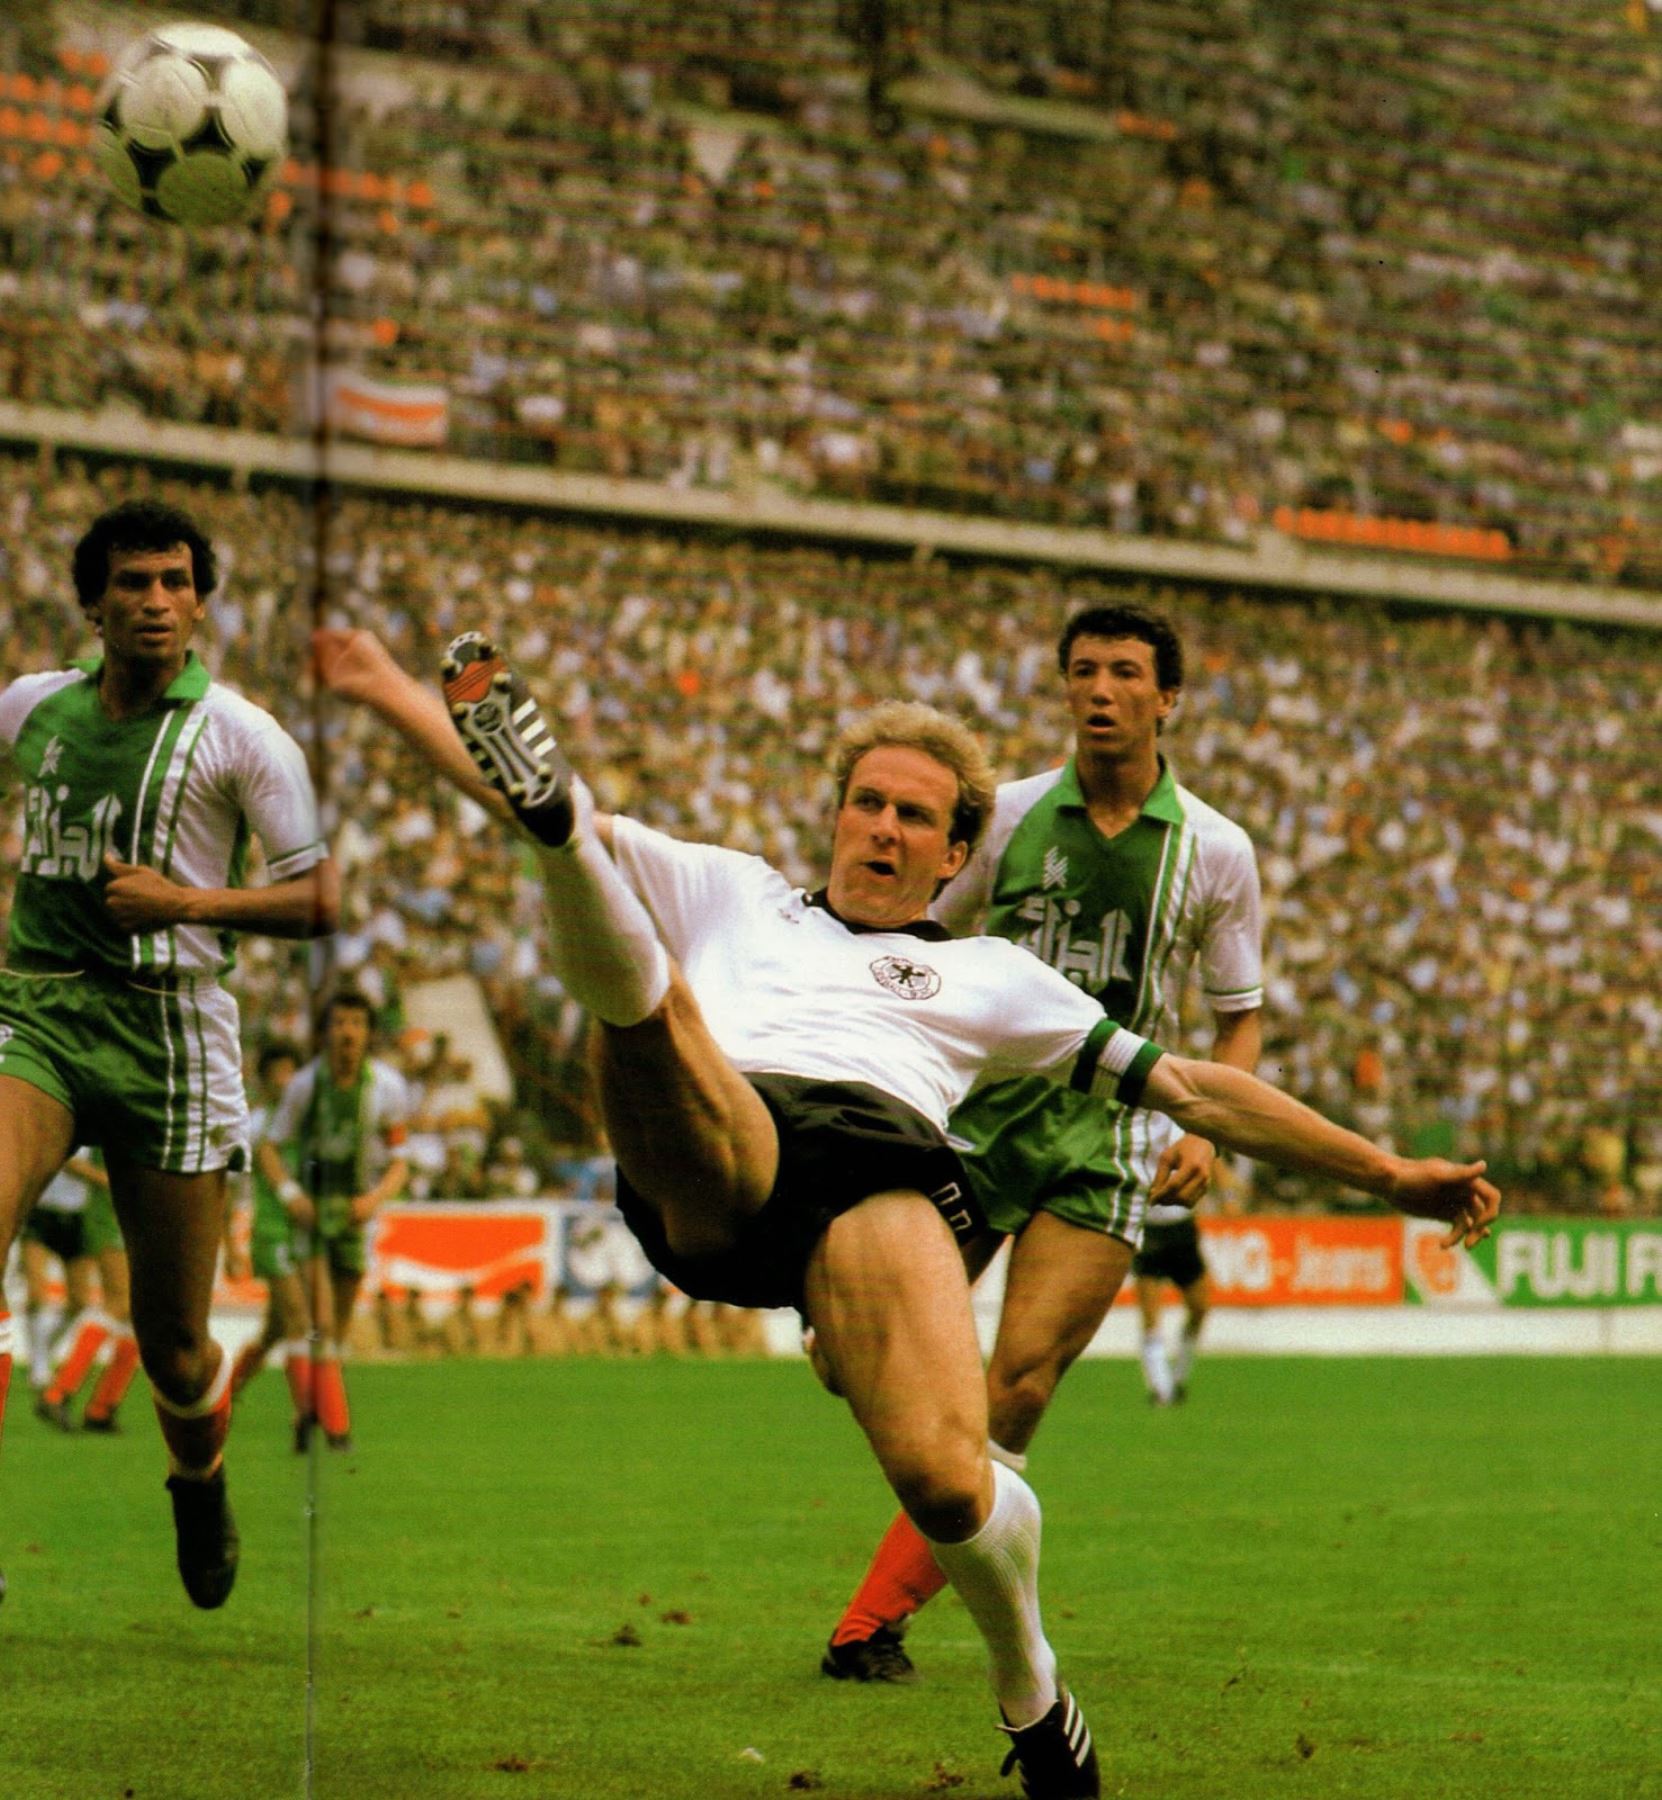 Karl-Heinz Rummenigge - República Federal de Alemania. Nueve goles en 19 partidos. Participó en los mundiales de 1978, 1982 y 1986. Foto: ANDINA/archivo